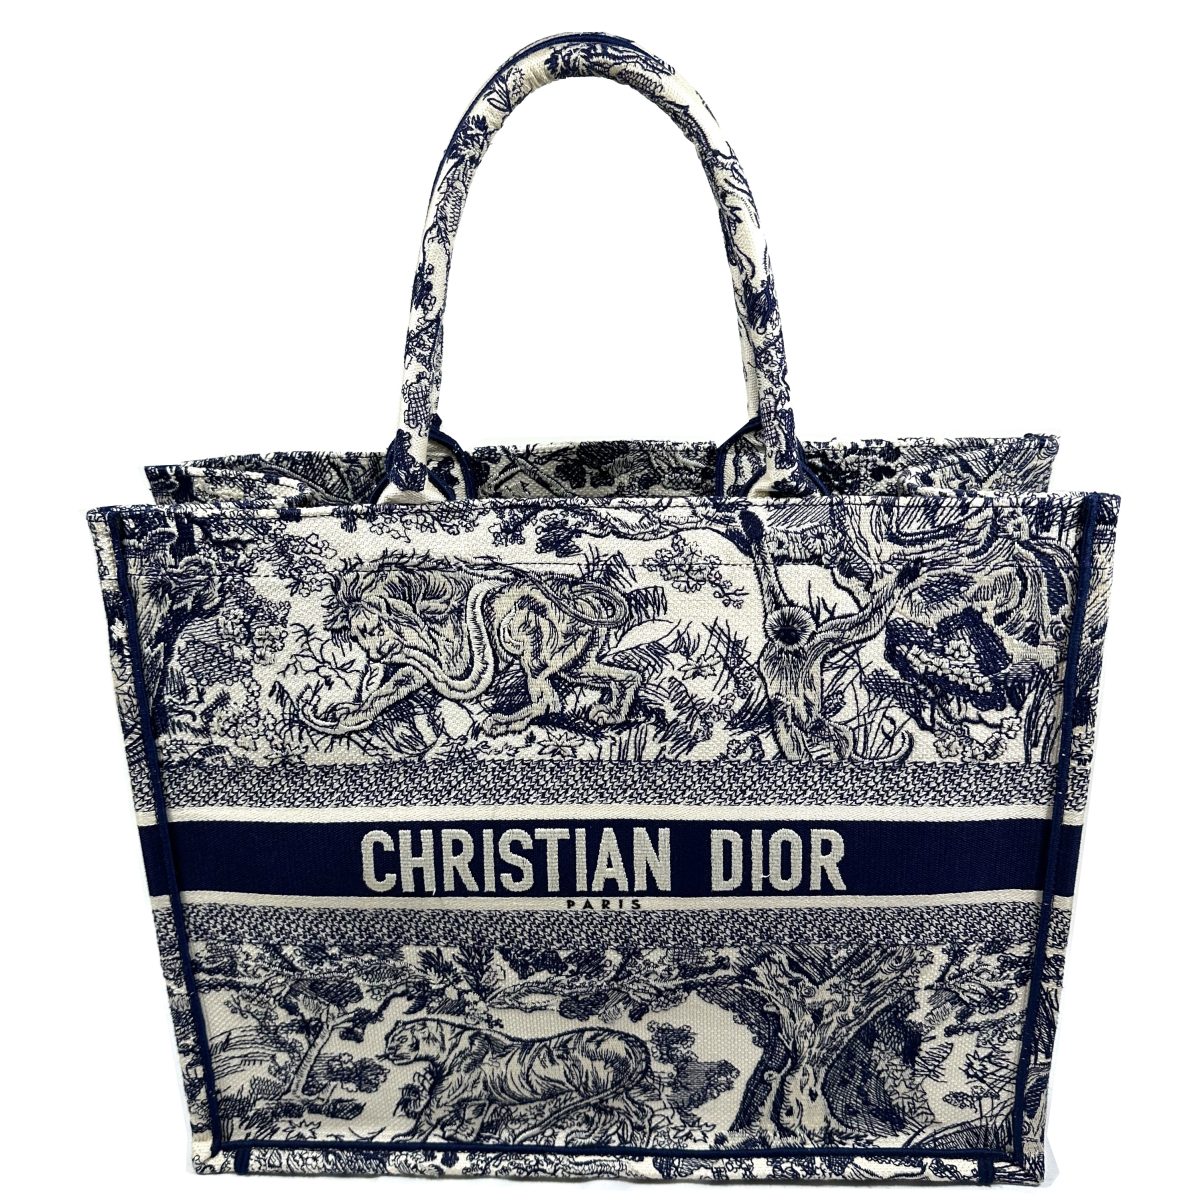 Dior designer bags